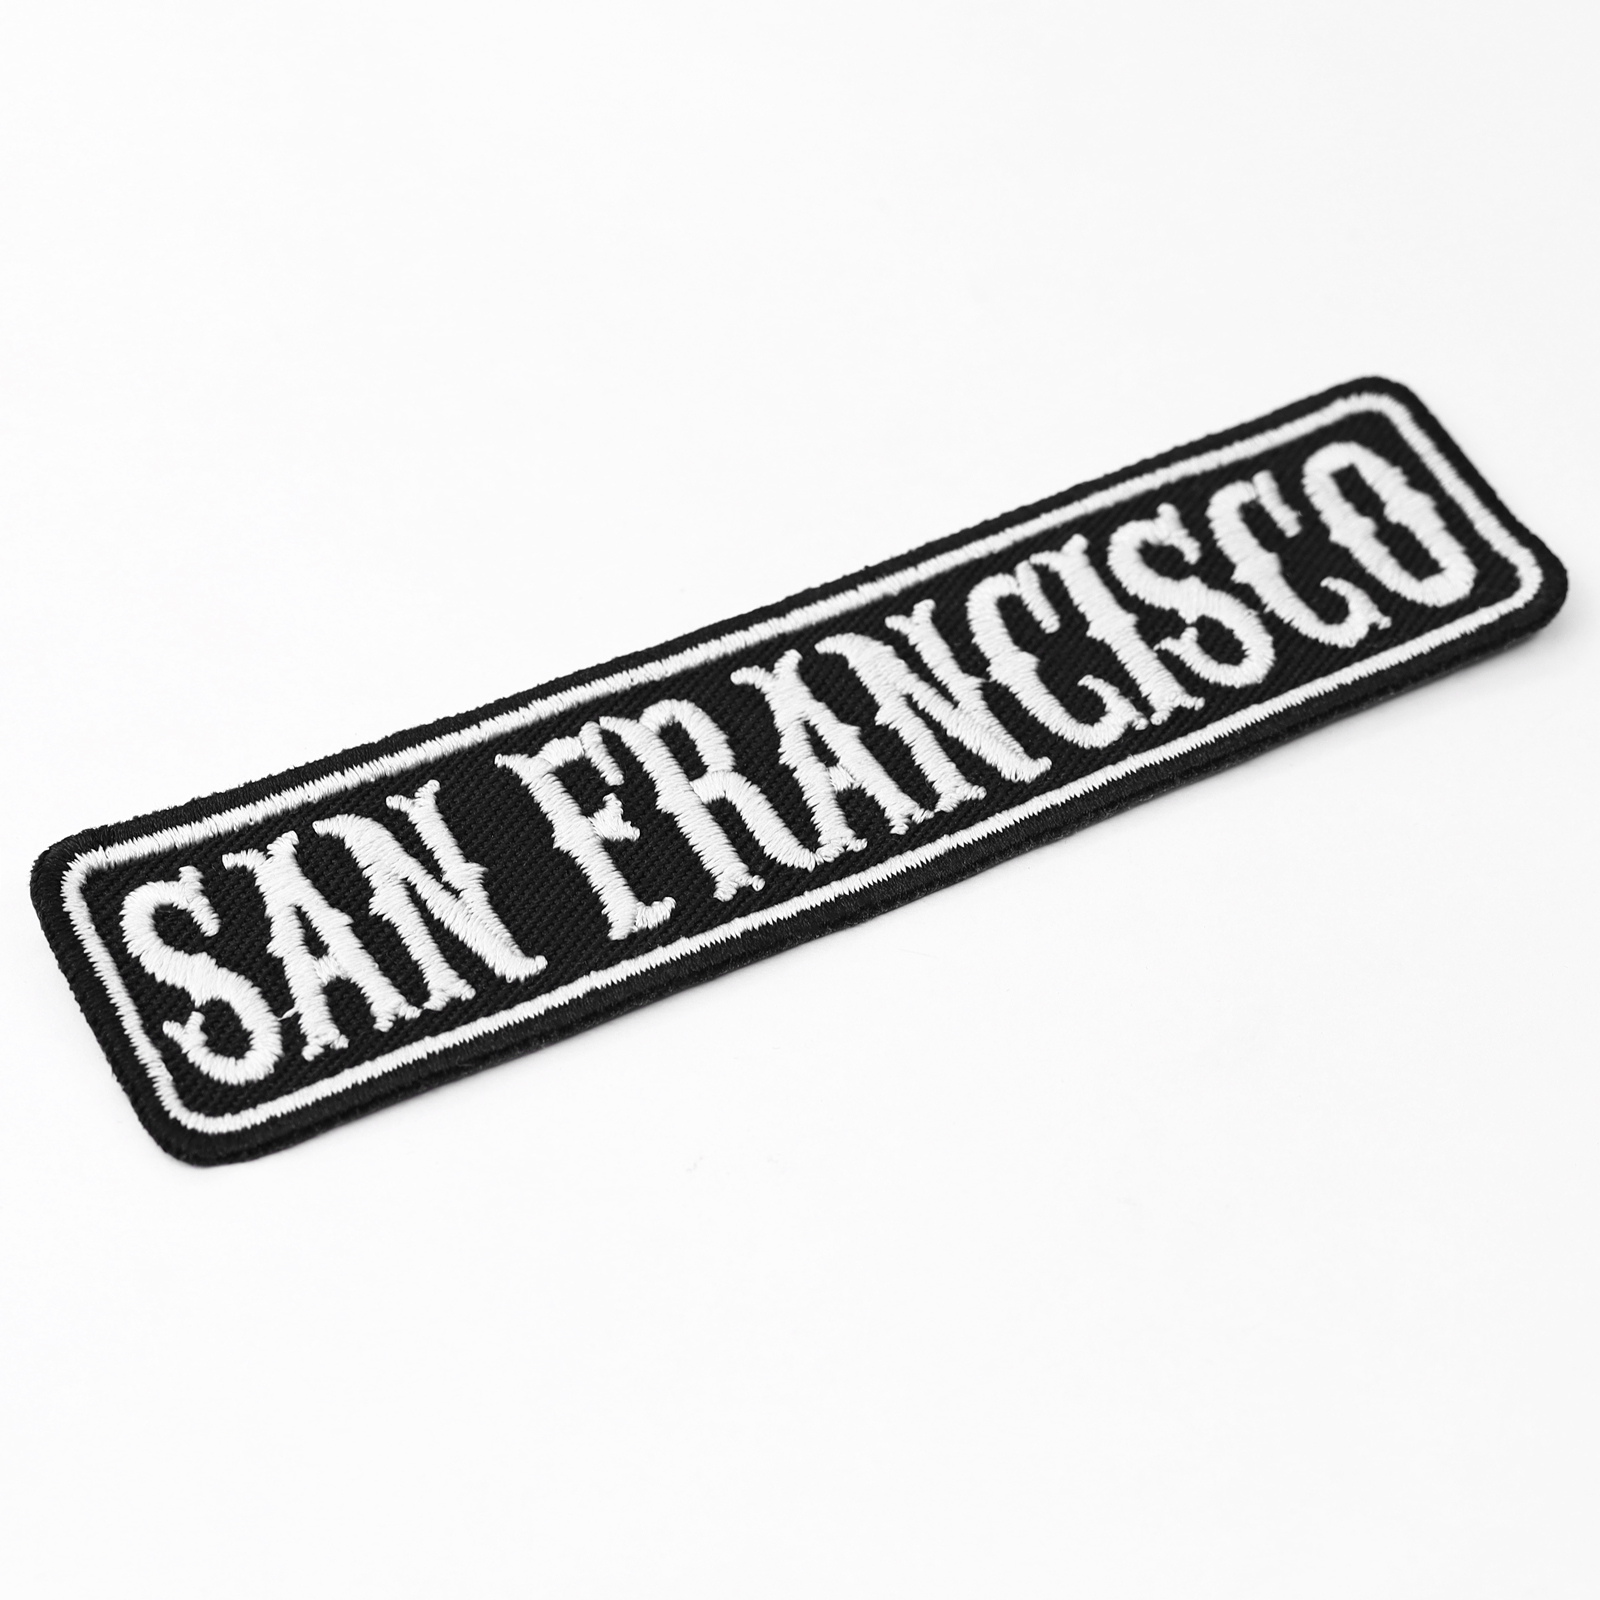 San Francisco - Patch